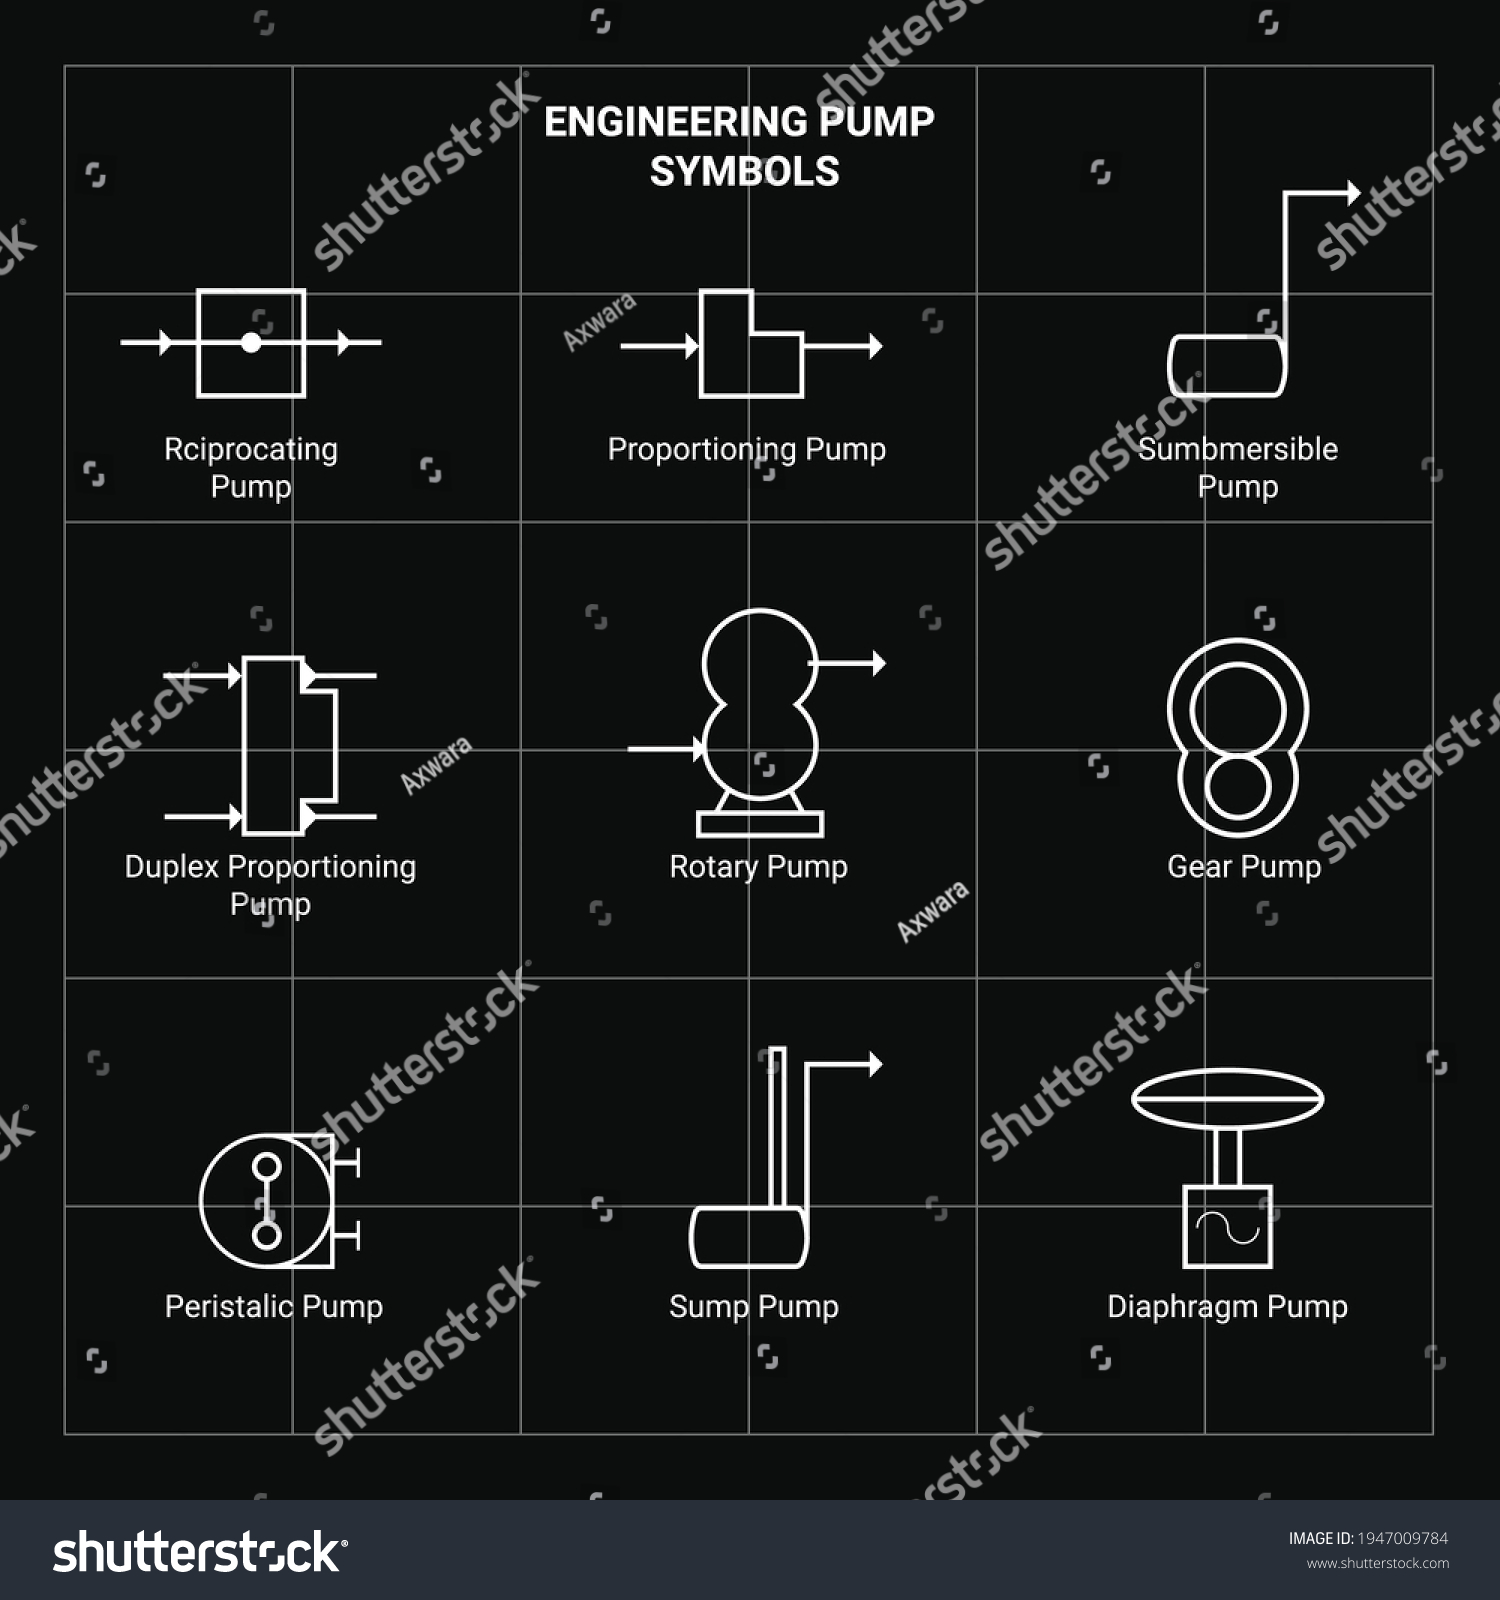 Engineering Drawing Symbol Pump Symbol Vector Stock Vector (Royalty ...